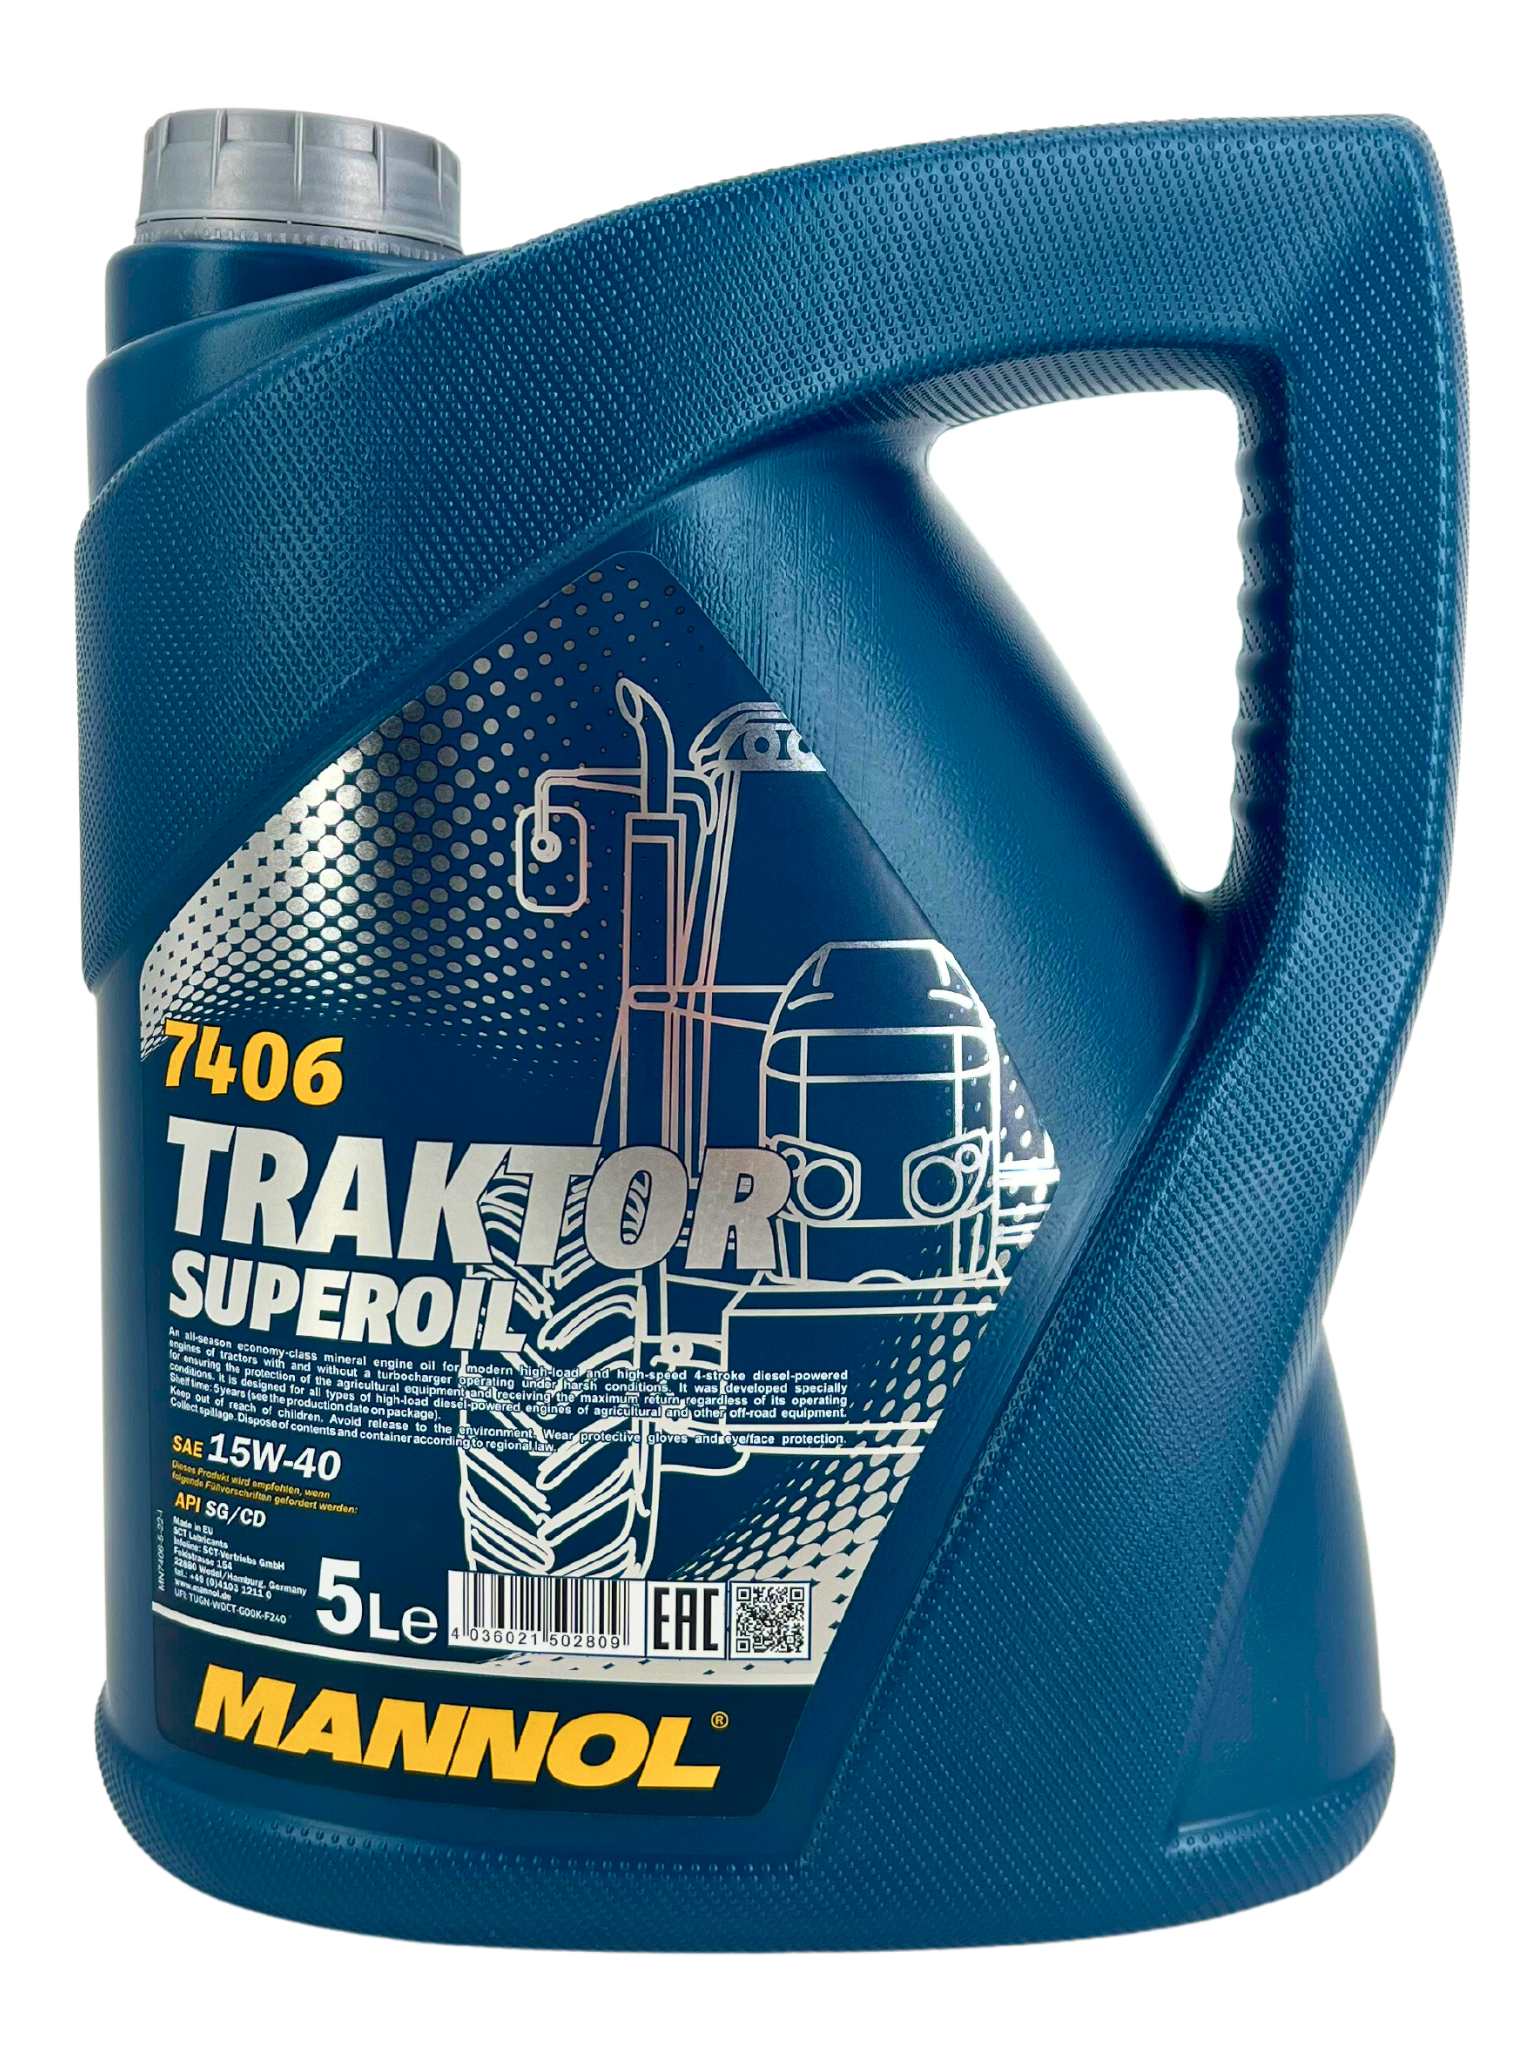 Mannol Traktor Superoil 15W-40 5 Liter